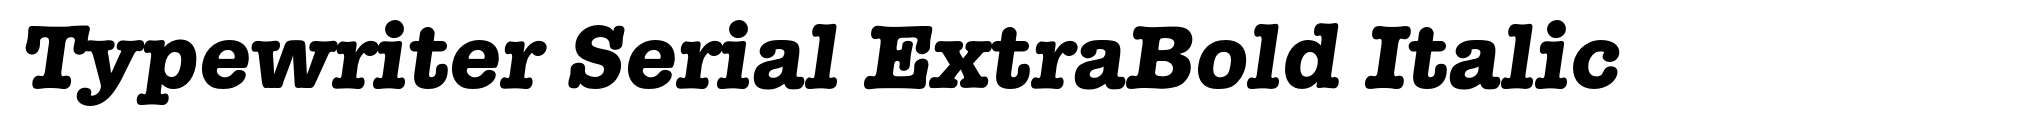 Typewriter Serial ExtraBold Italic image